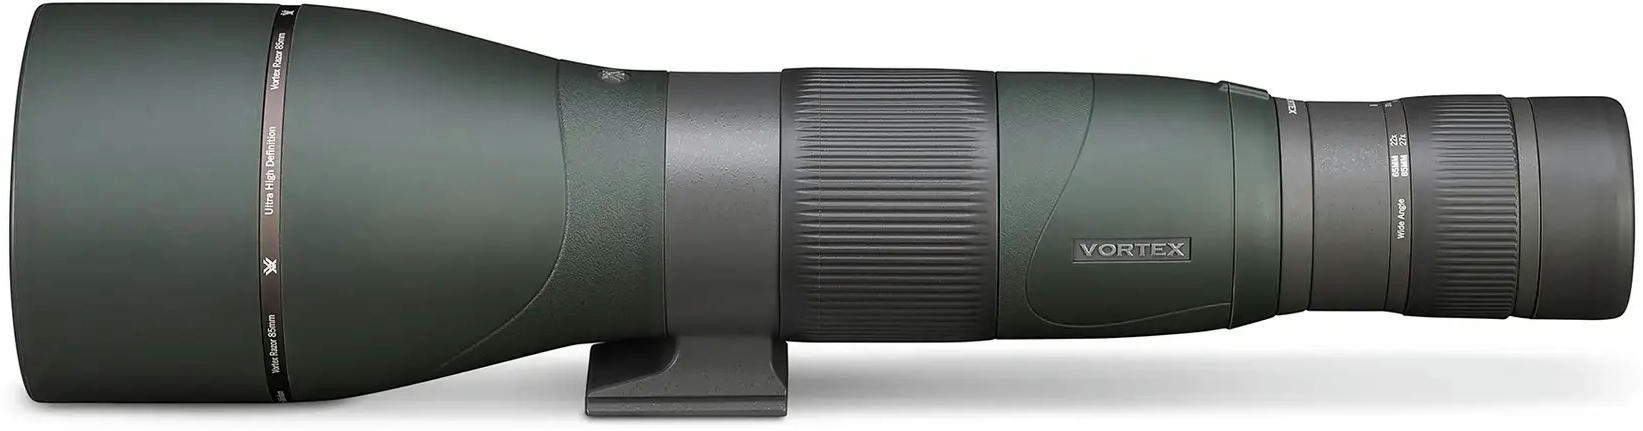 Підзорна труба Vortex Razor HD 27-60x85 (RS-85S)фото4